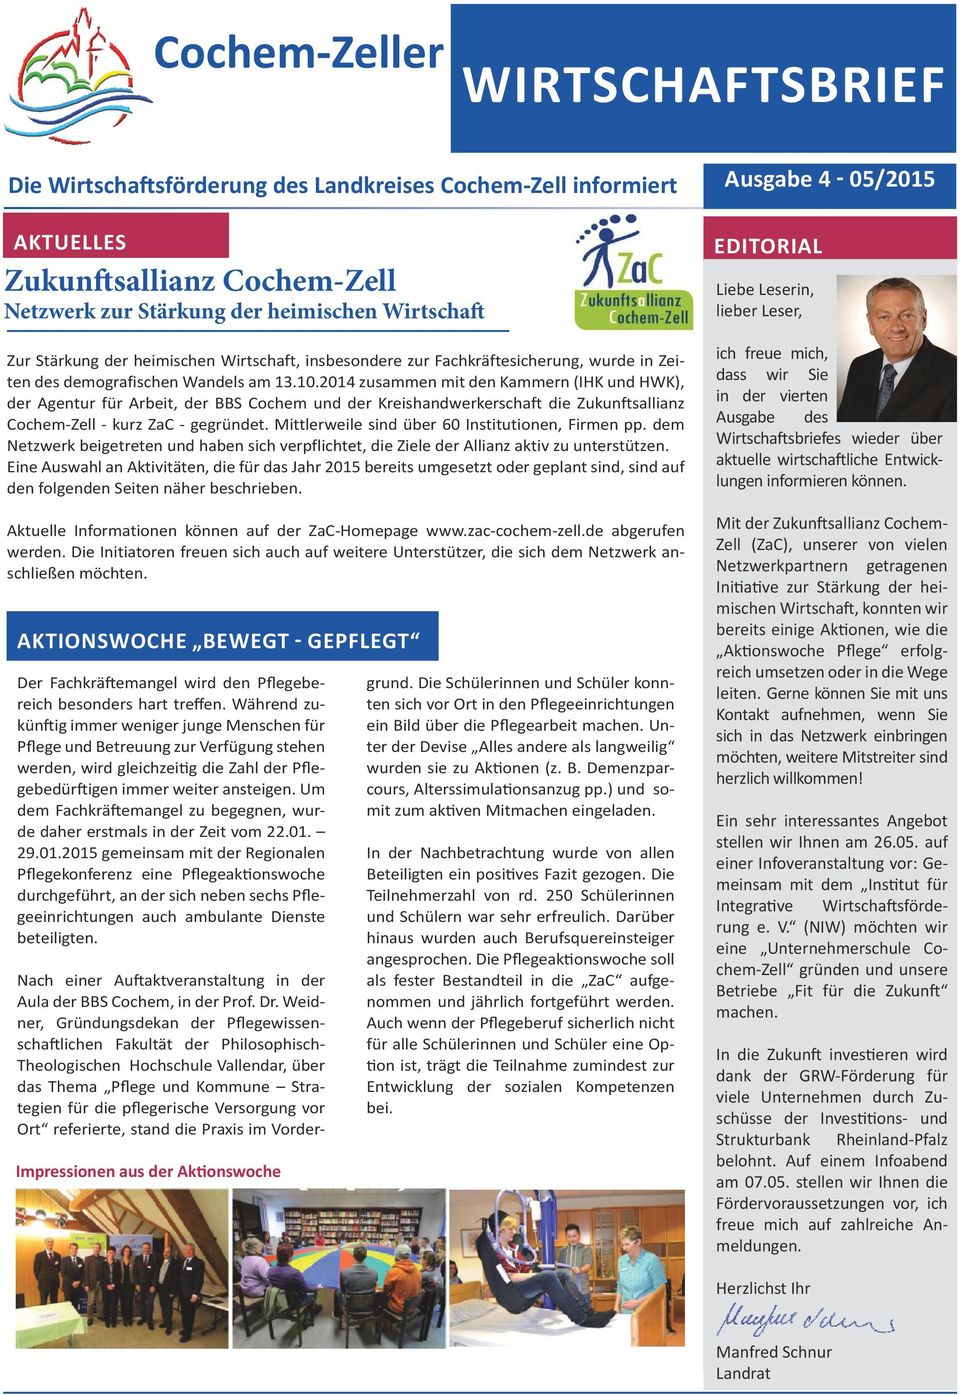 2014 zusammen mit den Kammern (IHK und HWK), der Agentur für Arbeit, der BBS Cochem und der Kreishandwerkerschaft die Zukunftsallianz Cochem-Zell - kurz ZaC - gegründet.